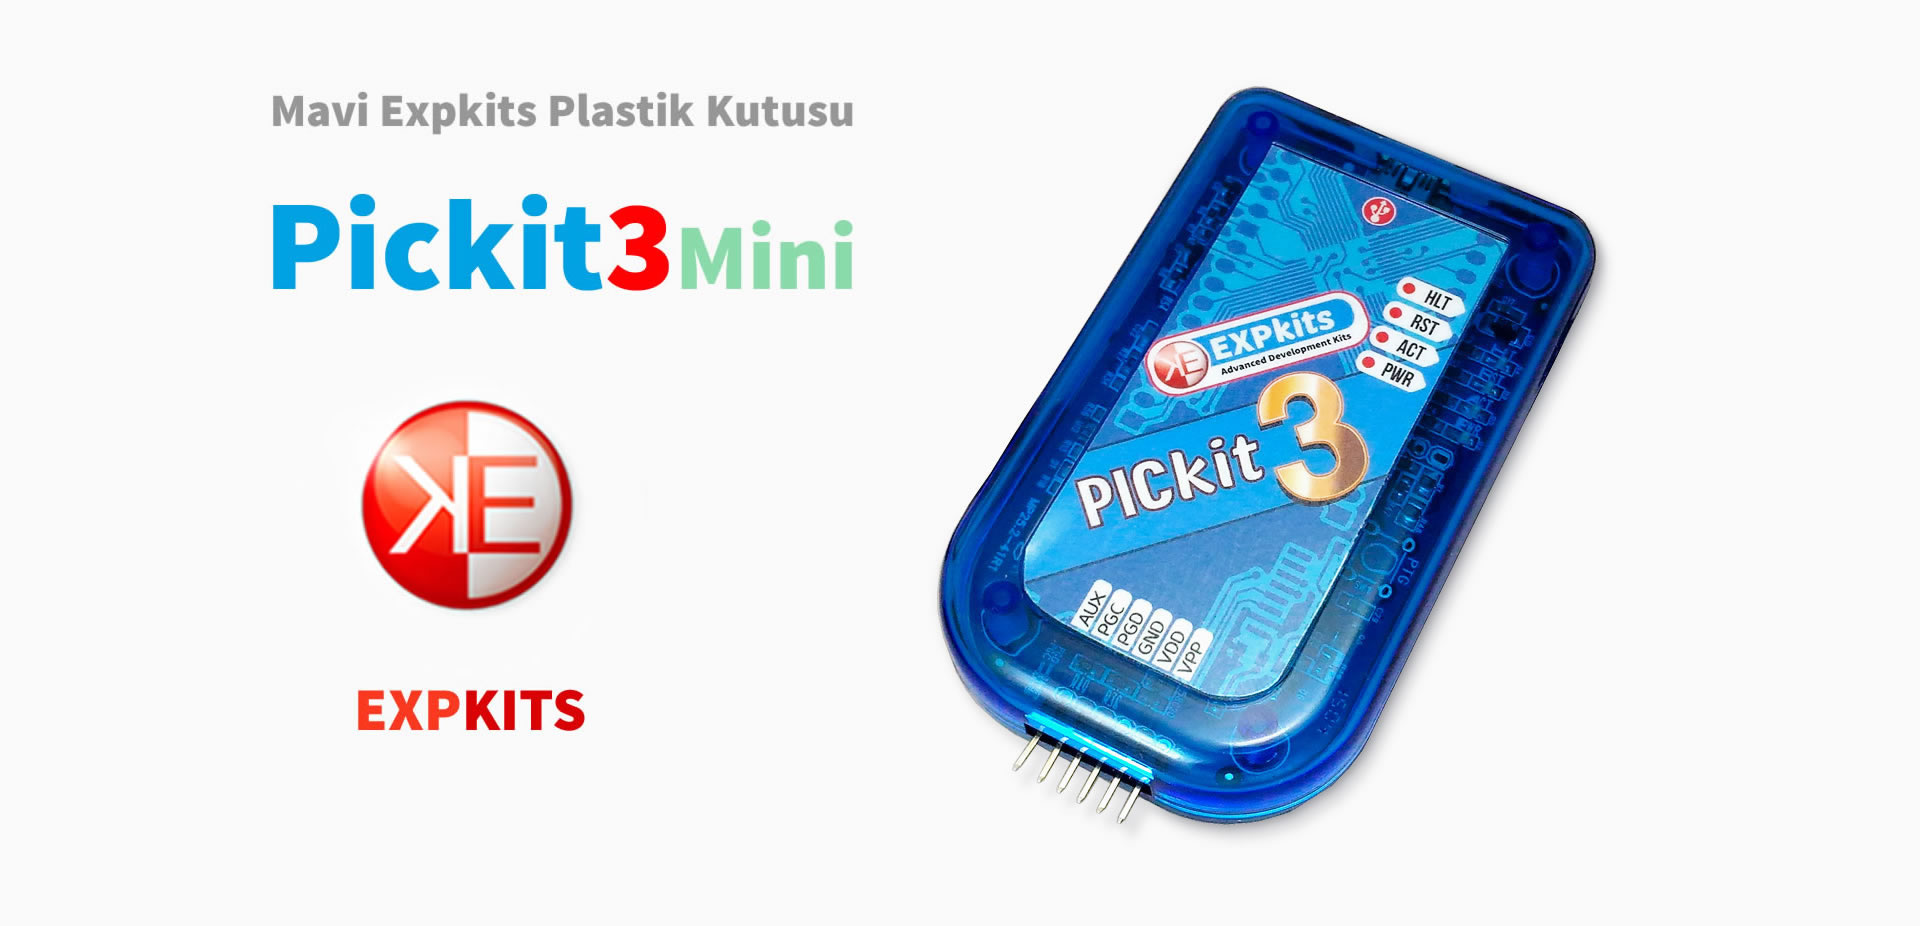 Expkits, Pickit3 Mini Clone, Plastik USB Kutu, Orjinalin %100 aynısı en stabil Pickit3 klonu, ABS ve Polikarbon Malzeme